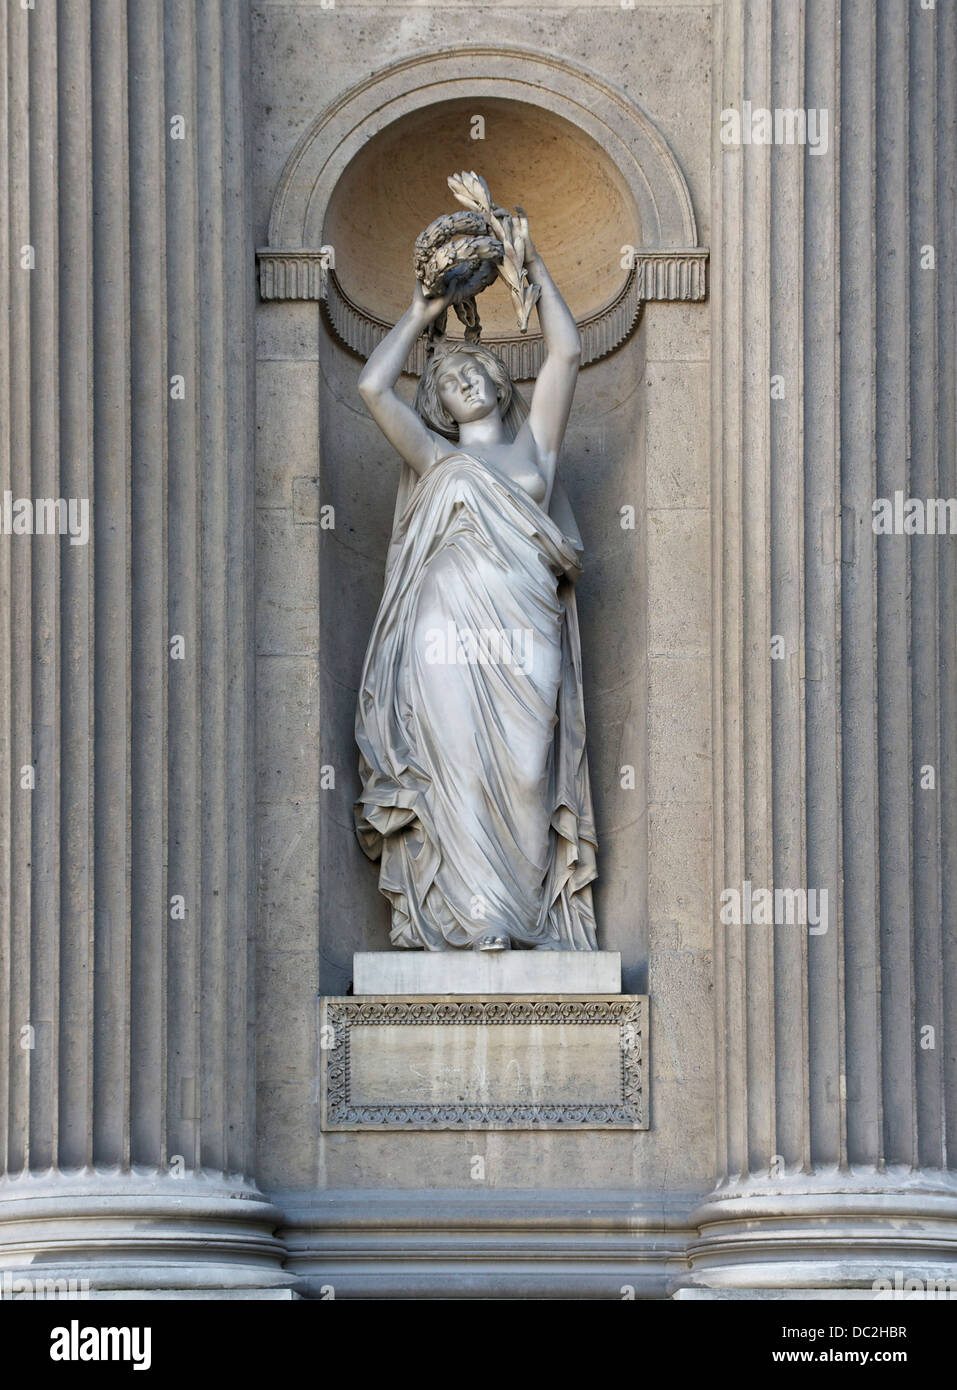 A niche statue in the Cour Carrée of the Palais du Louvre, Paris, France. Stock Photo